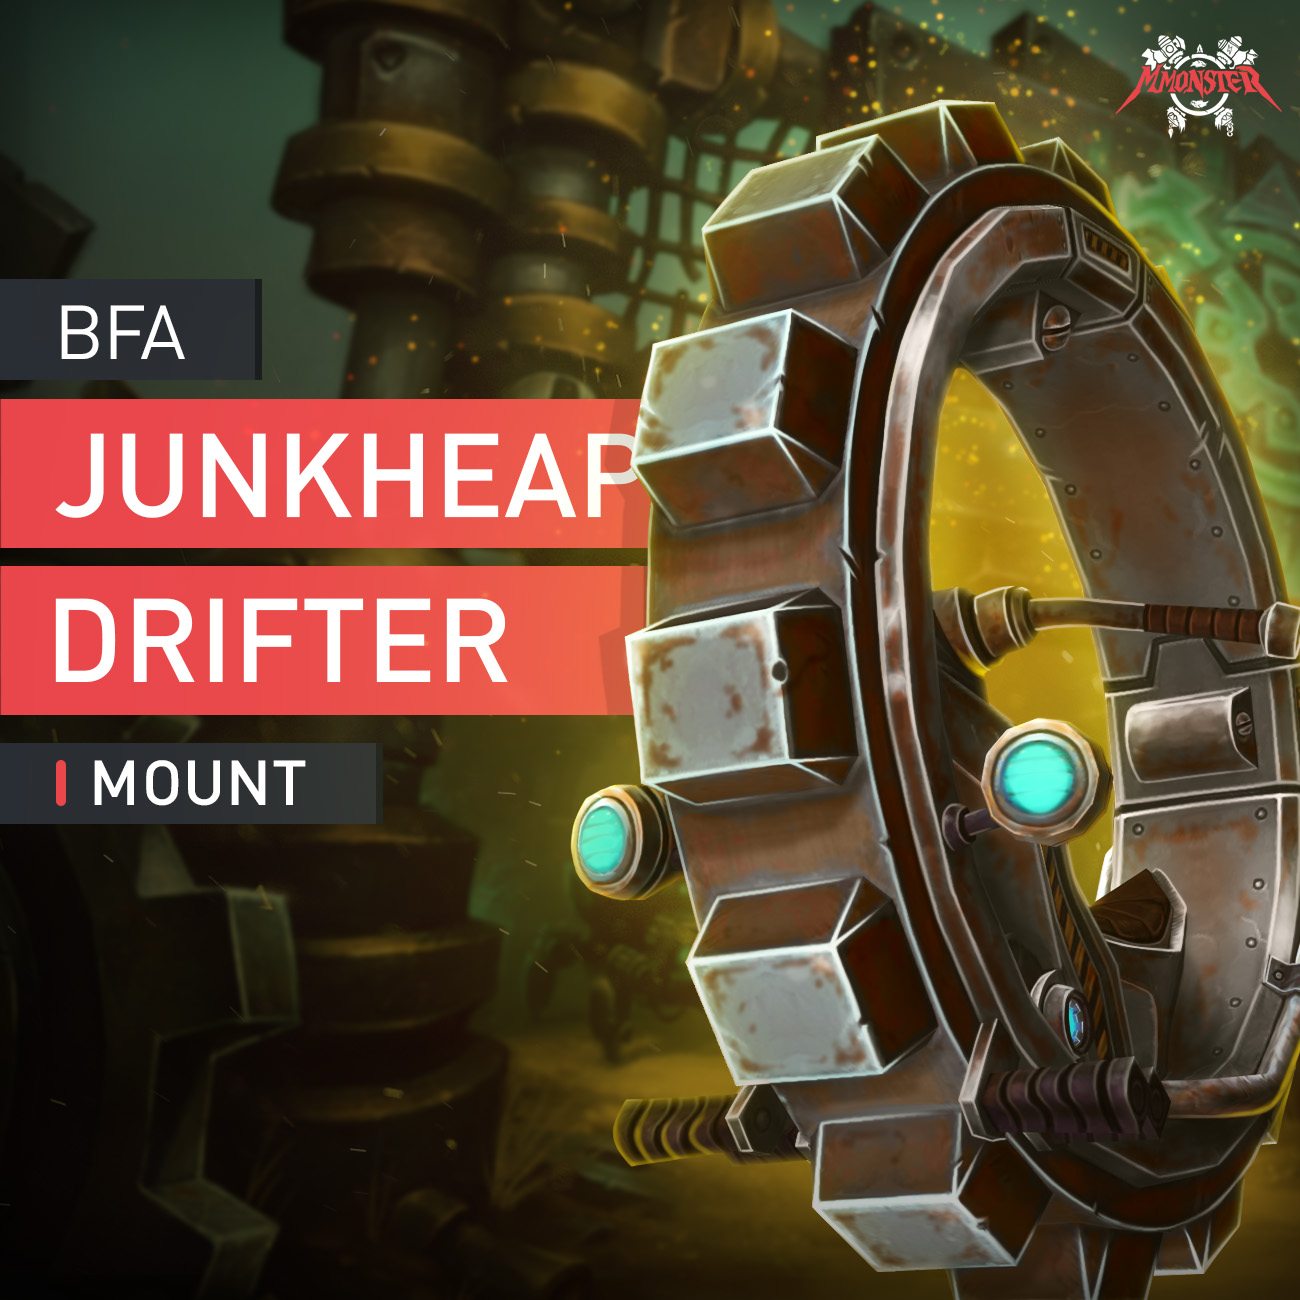 Junkheap Drifter Mount